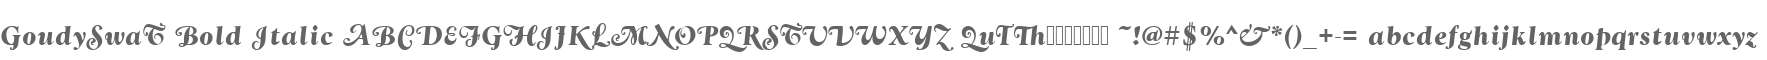 GoudySwaT Bold Italic